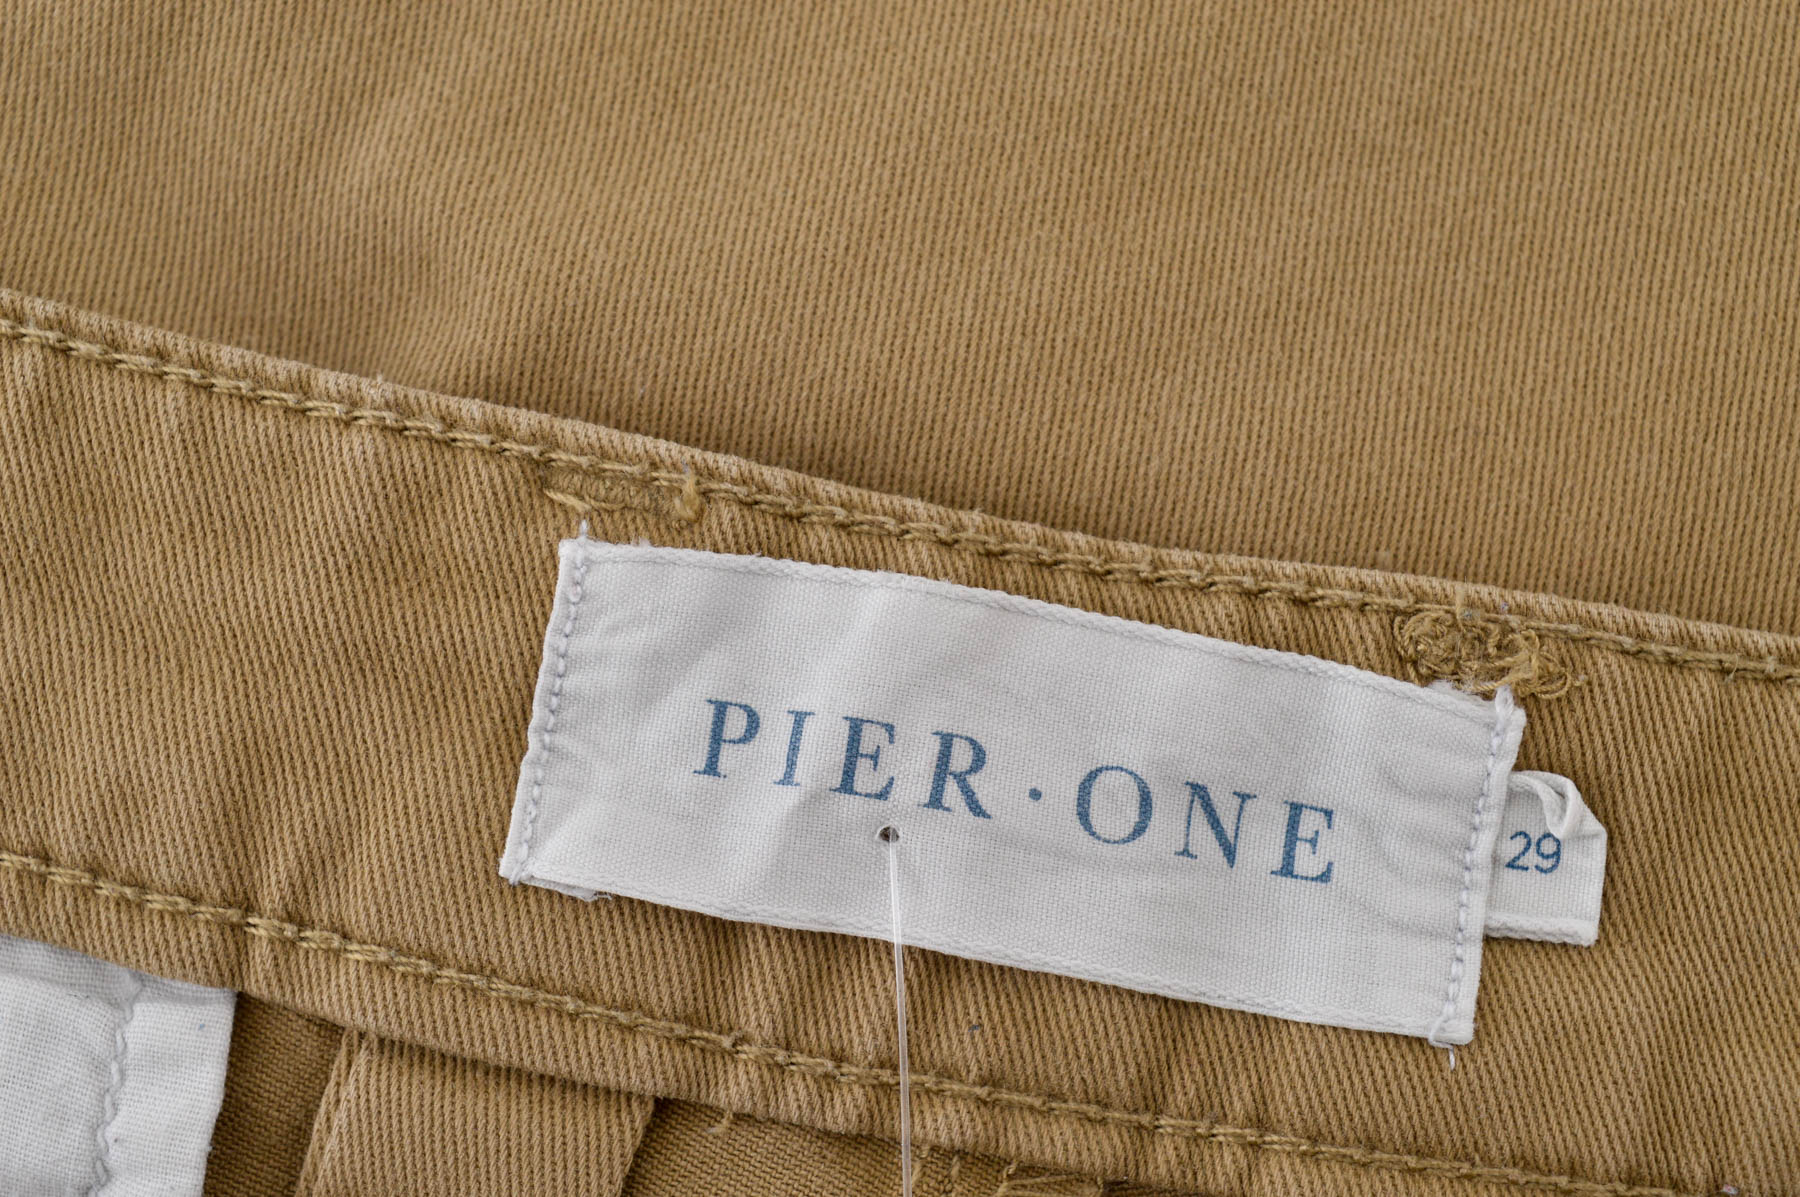 Pantalon pentru bărbați - Pier One - 2